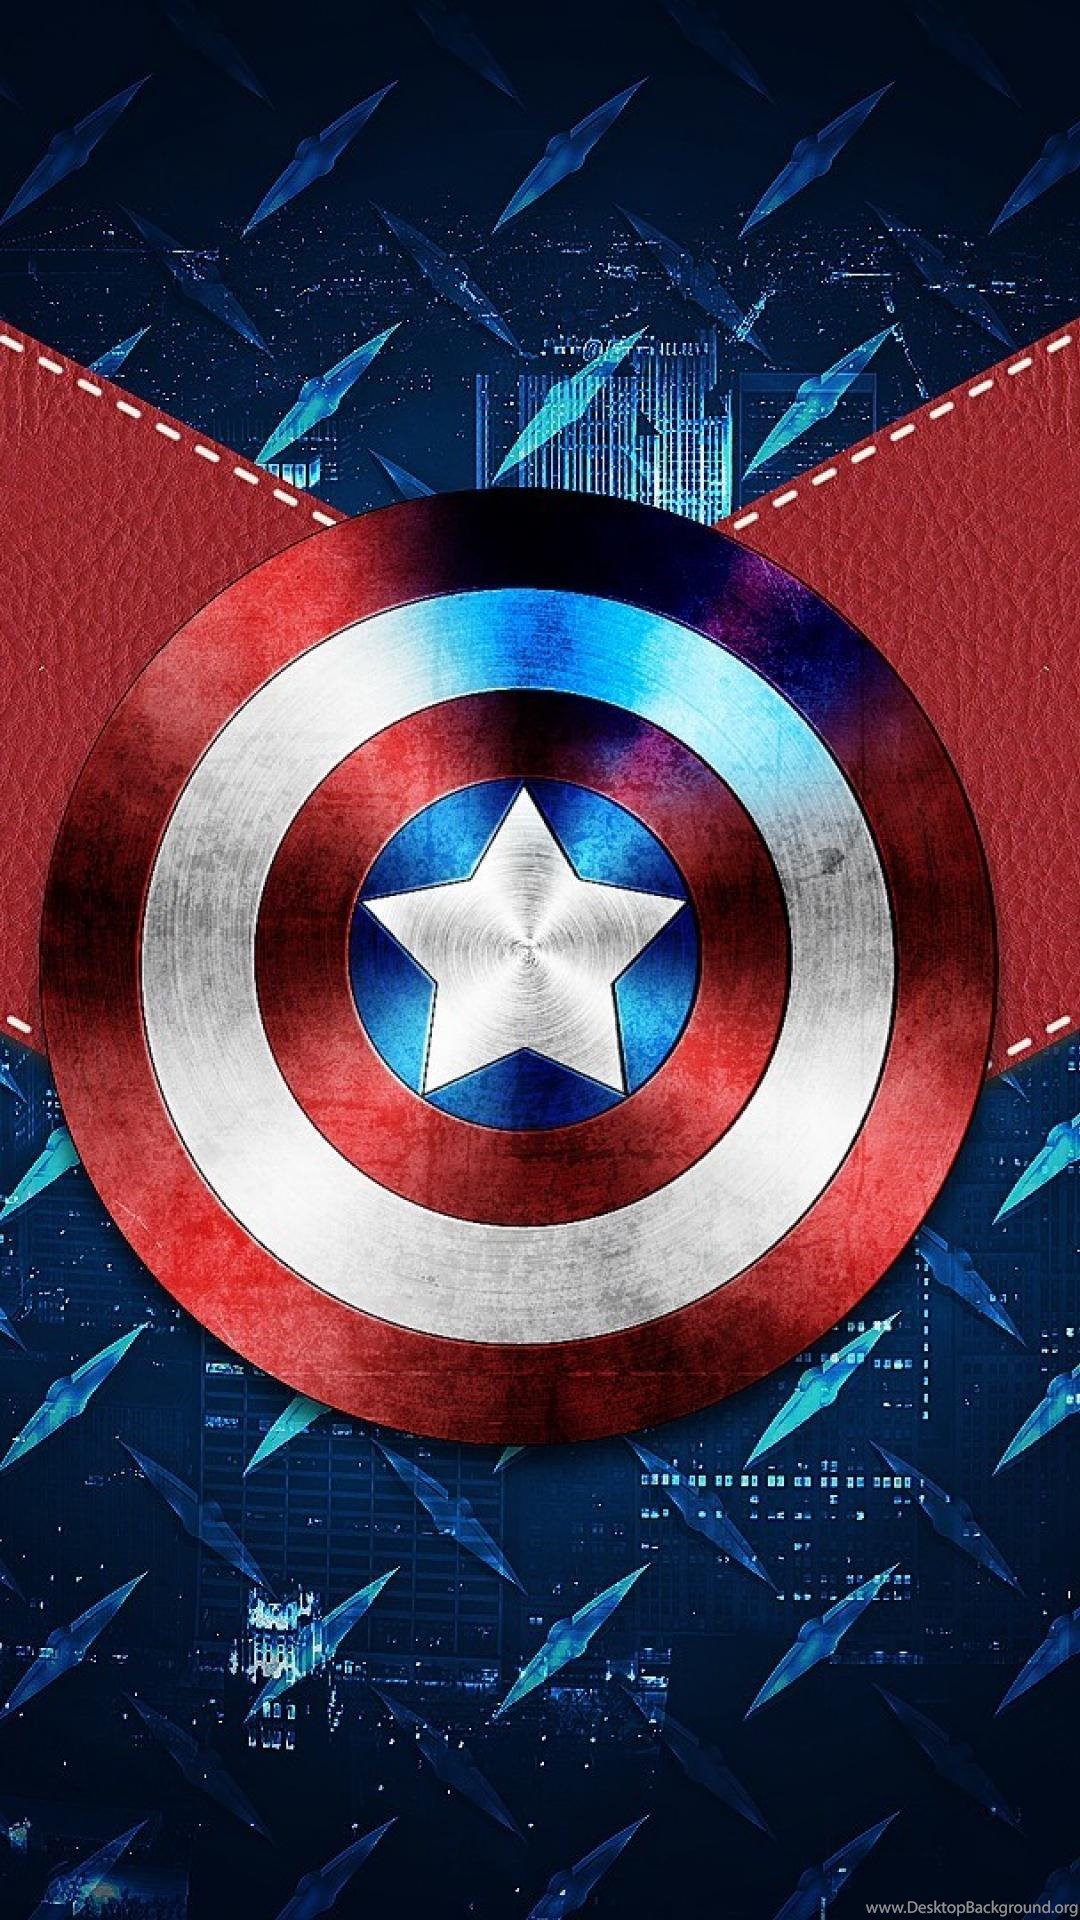 Descarga Capitan America: El Soldado De invierno 2014